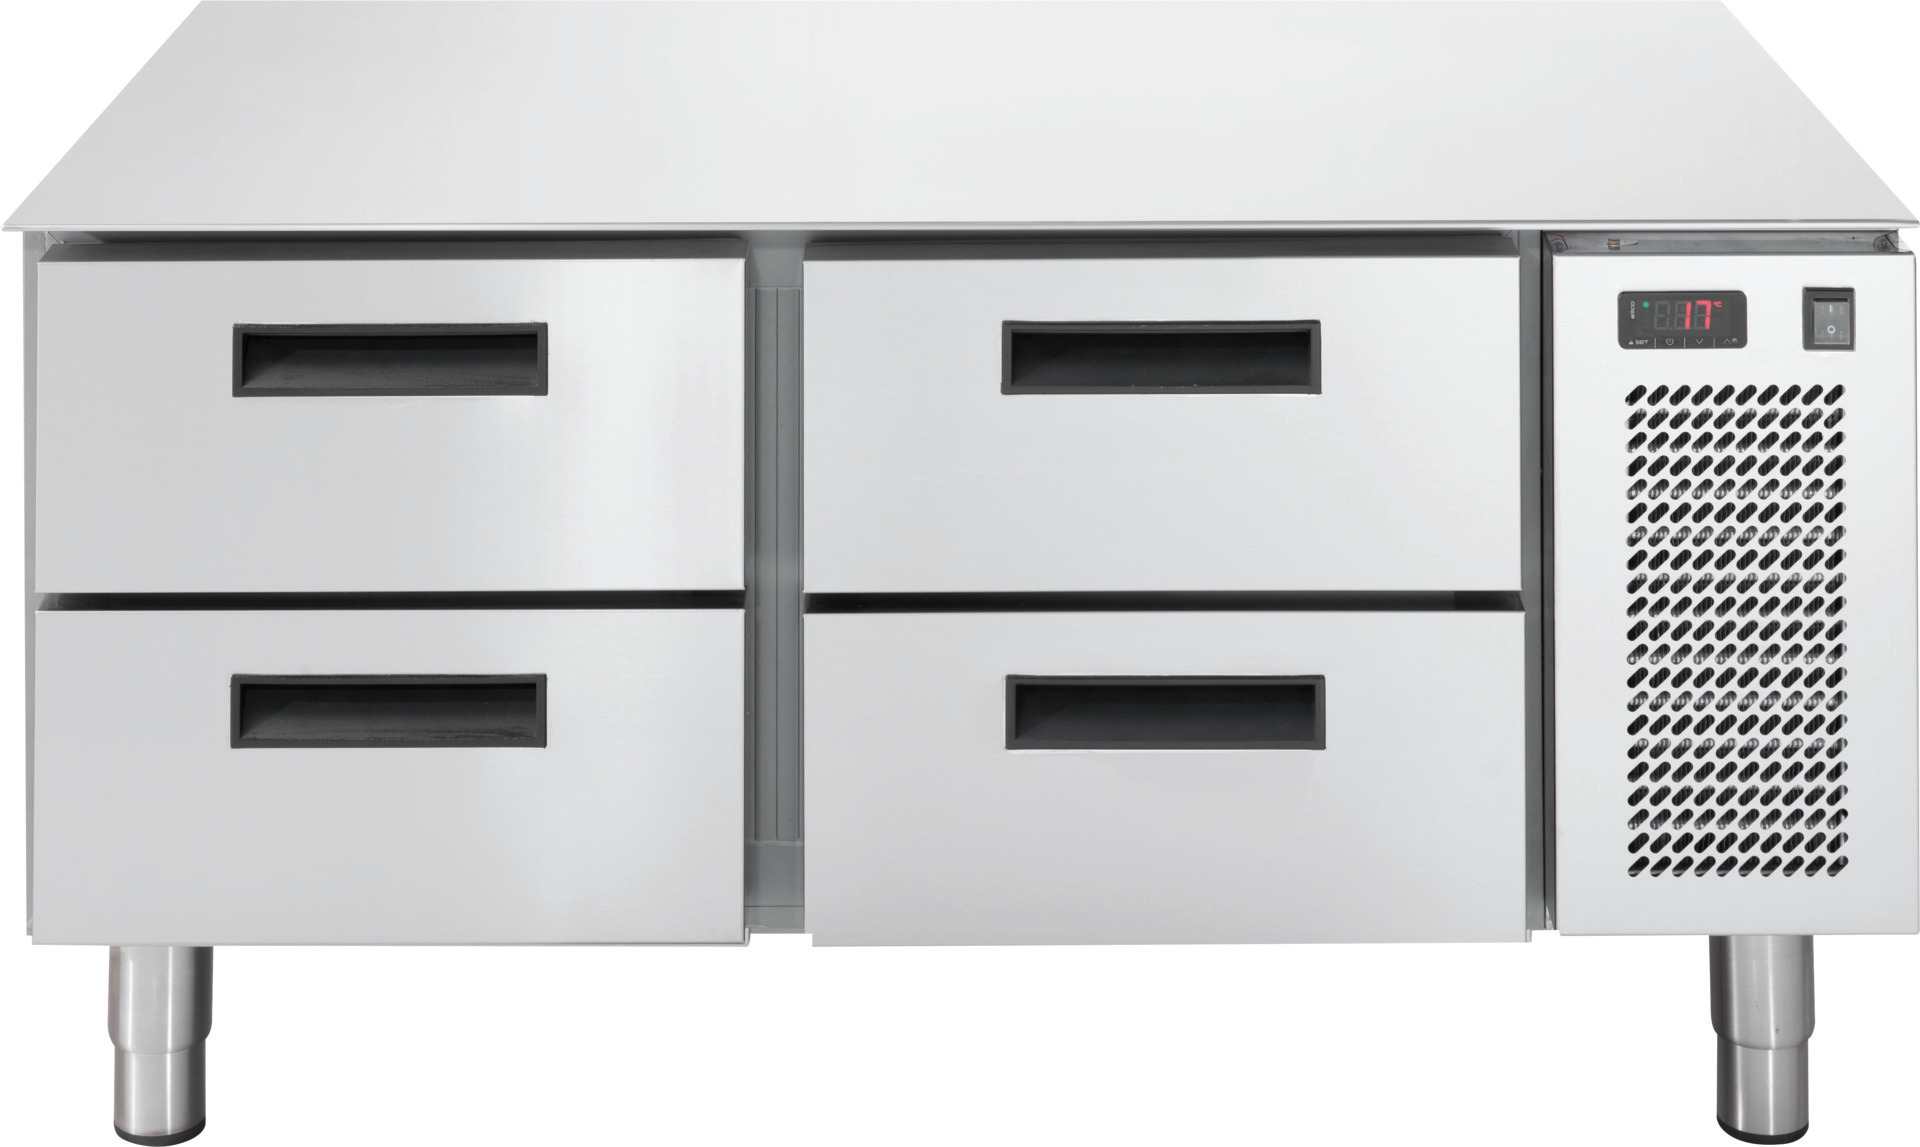 Unterbautiefkühltisch, 4 Schubladen, 86 l, 1200 x 673 x 572 mm